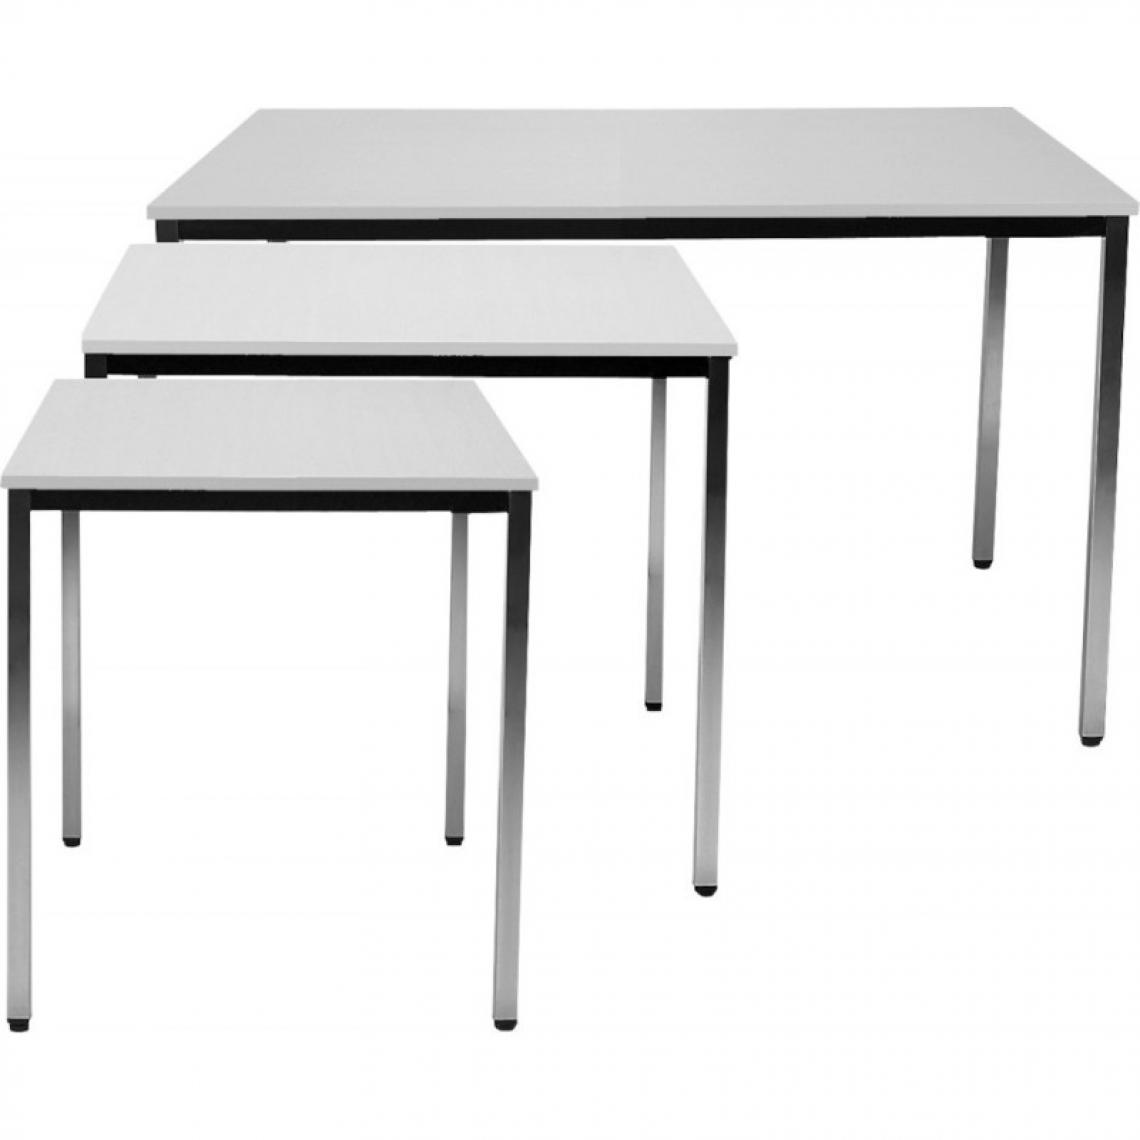 marque generique - Table 800x800 mm chrom/gris clair - Cheville